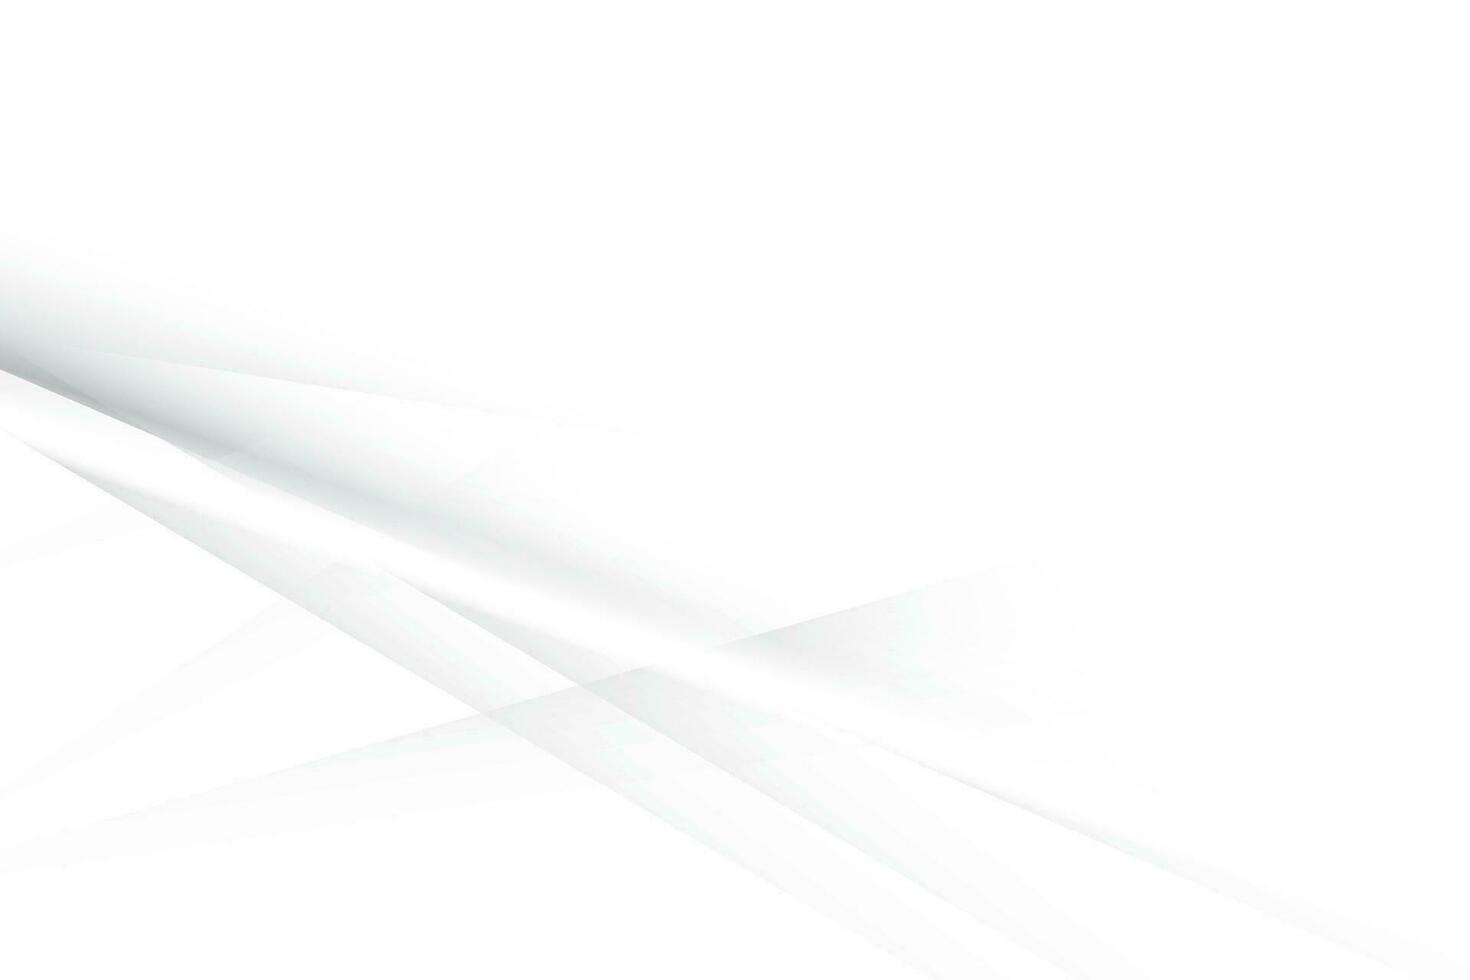 couleur blanche et grise abstraite, fond de rayures design moderne avec forme géométrique. illustration vectorielle. vecteur